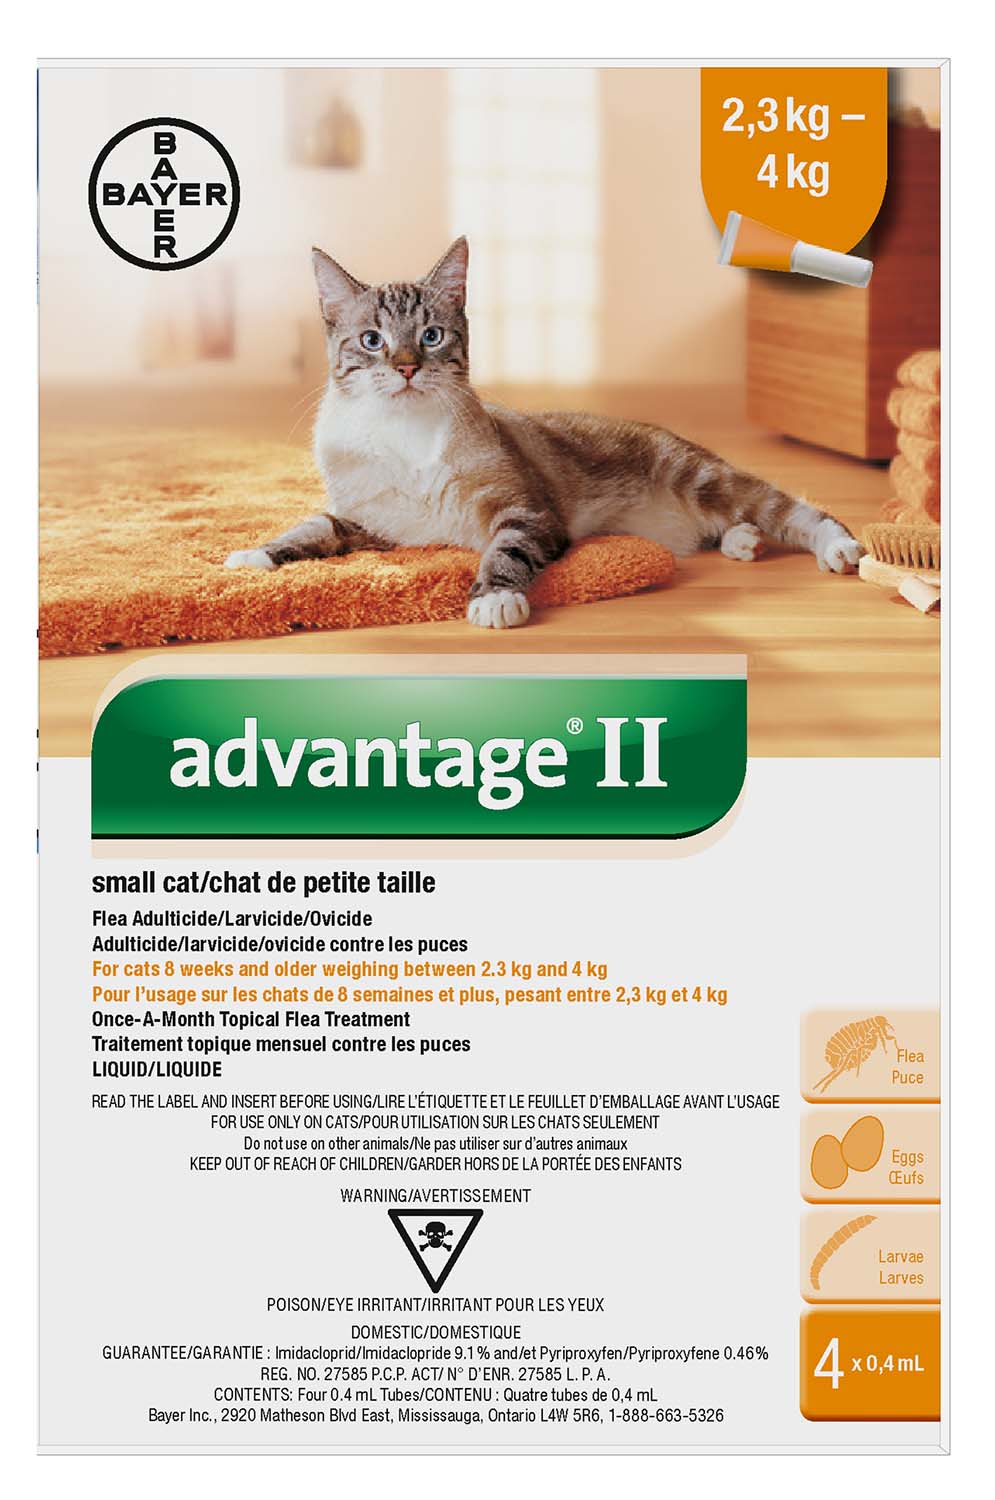 Advantage II small cat <4kg